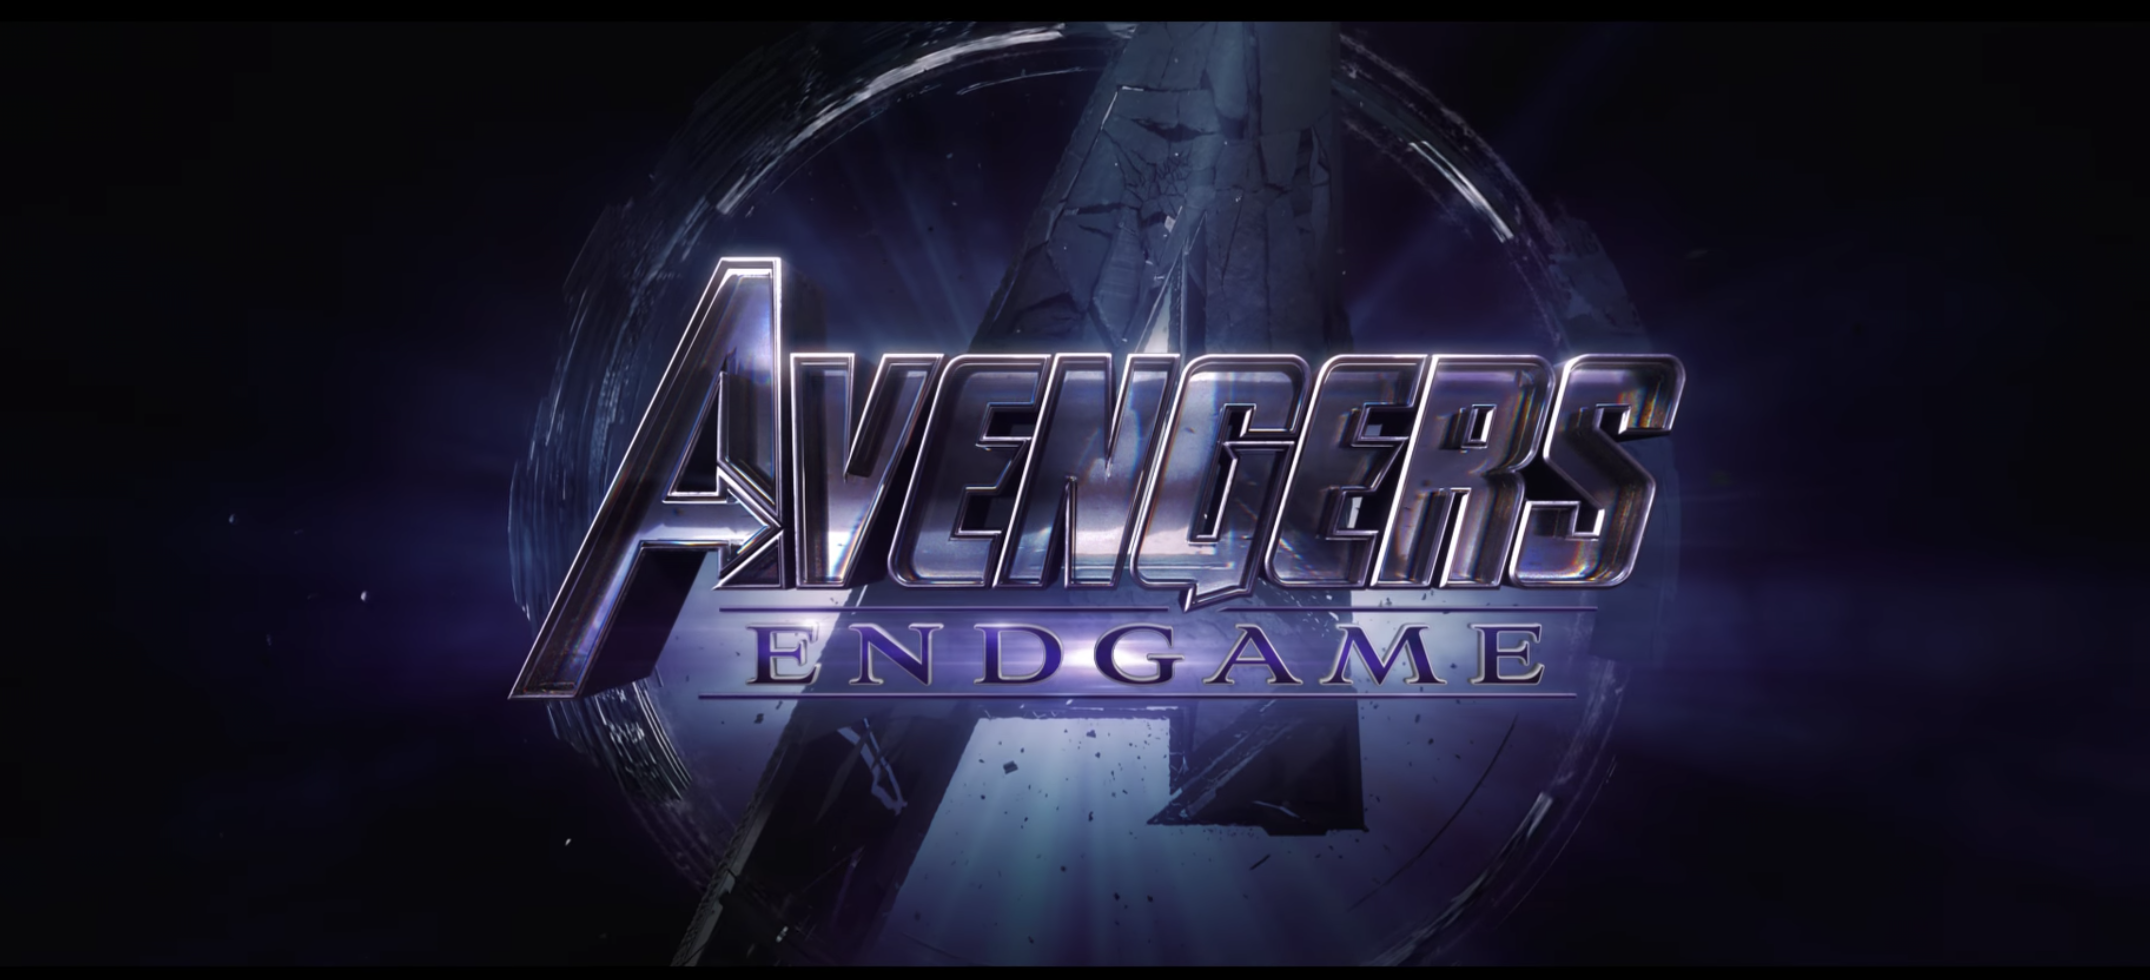 Avengers 4 title revealed as Avengers: Endgame